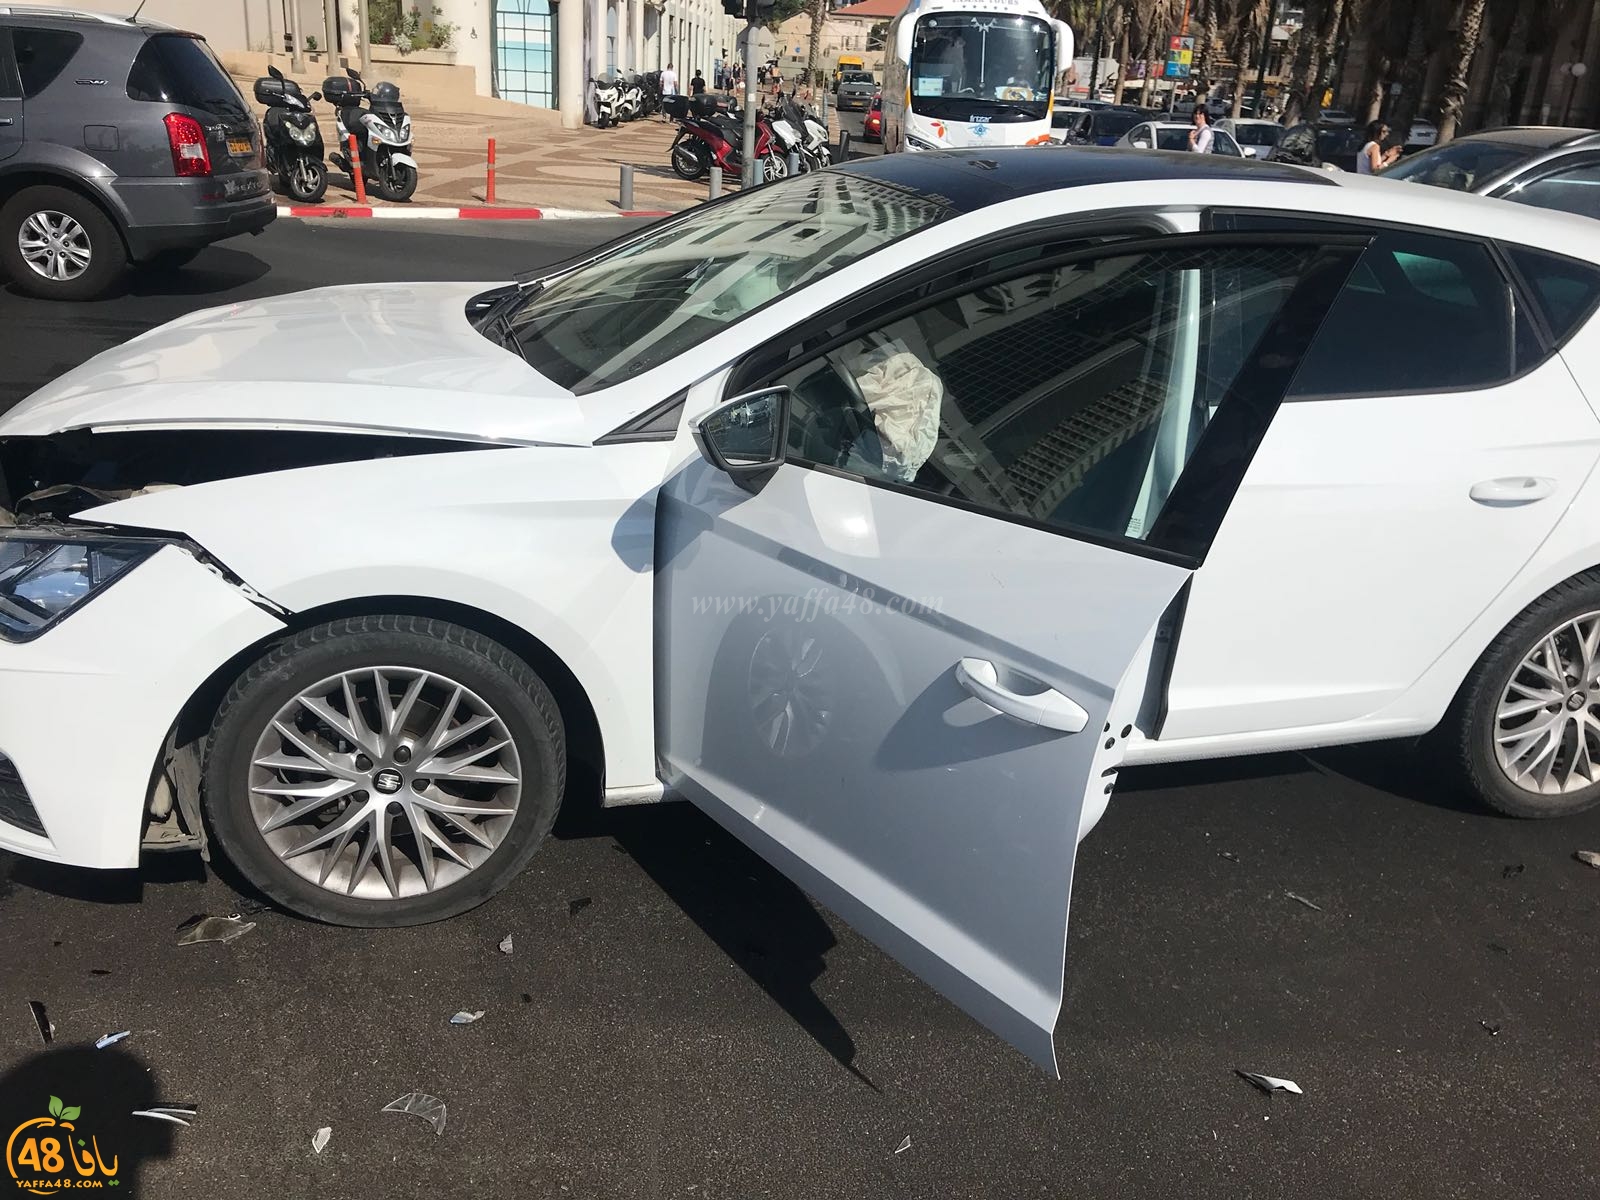  اصابة طفيفة لشخصين بحادث طرق بين مركبتين بيافا 